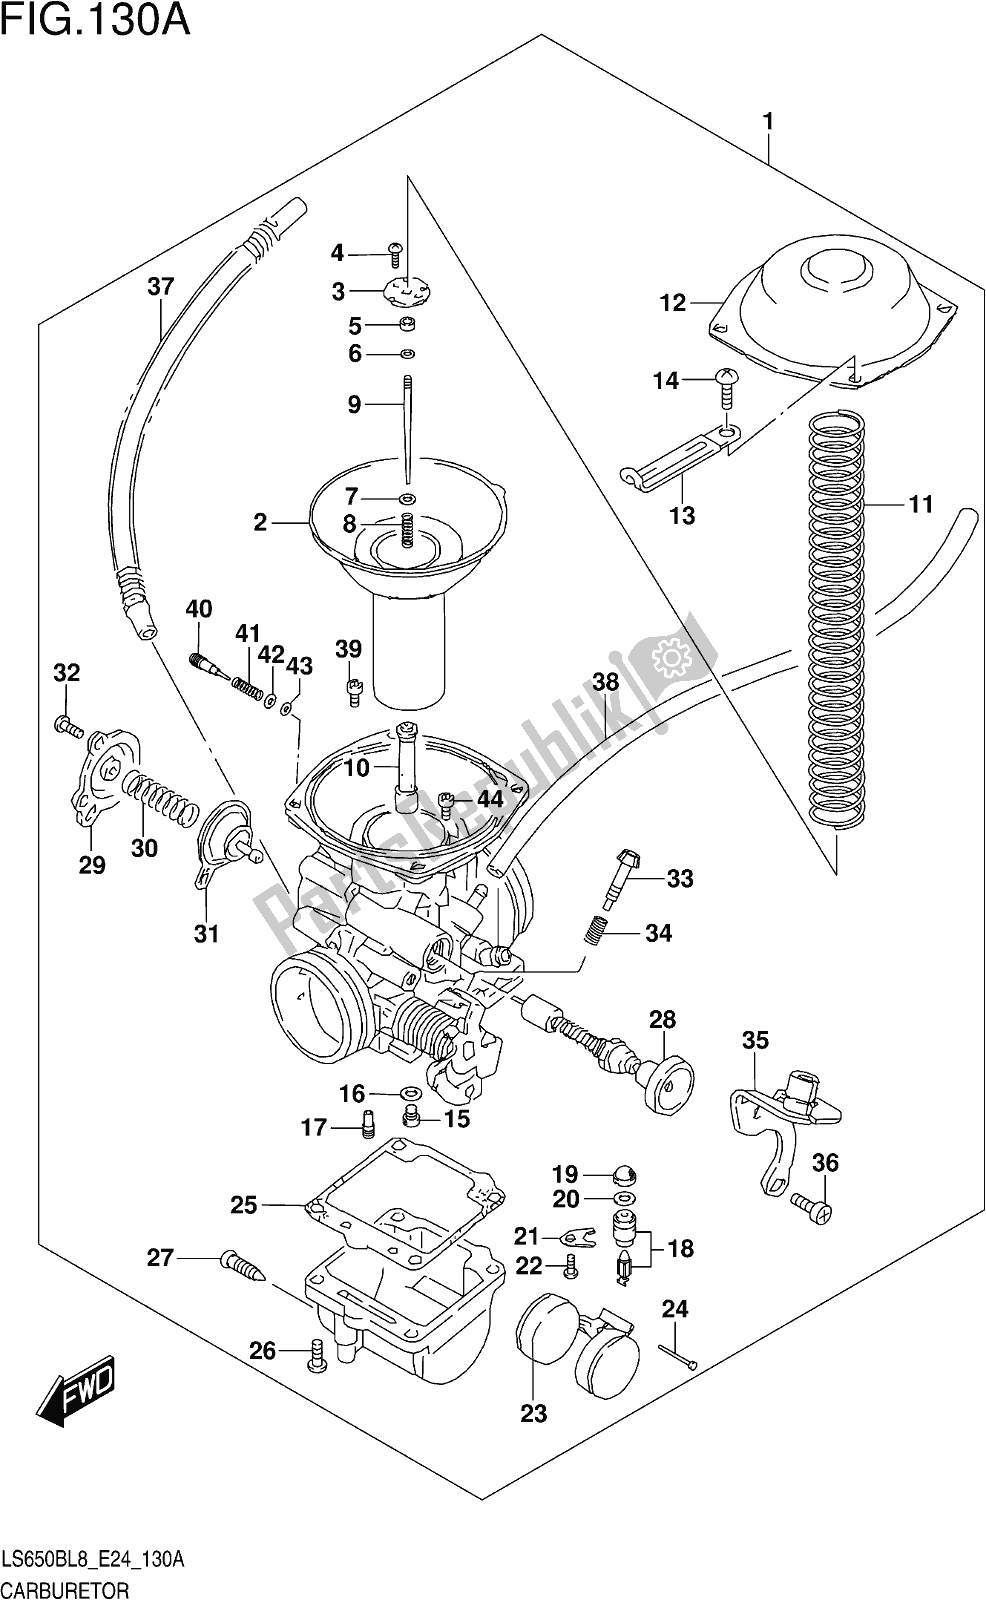 Alle onderdelen voor de Fig. 130a Carburetor van de Suzuki LS 650B 2018